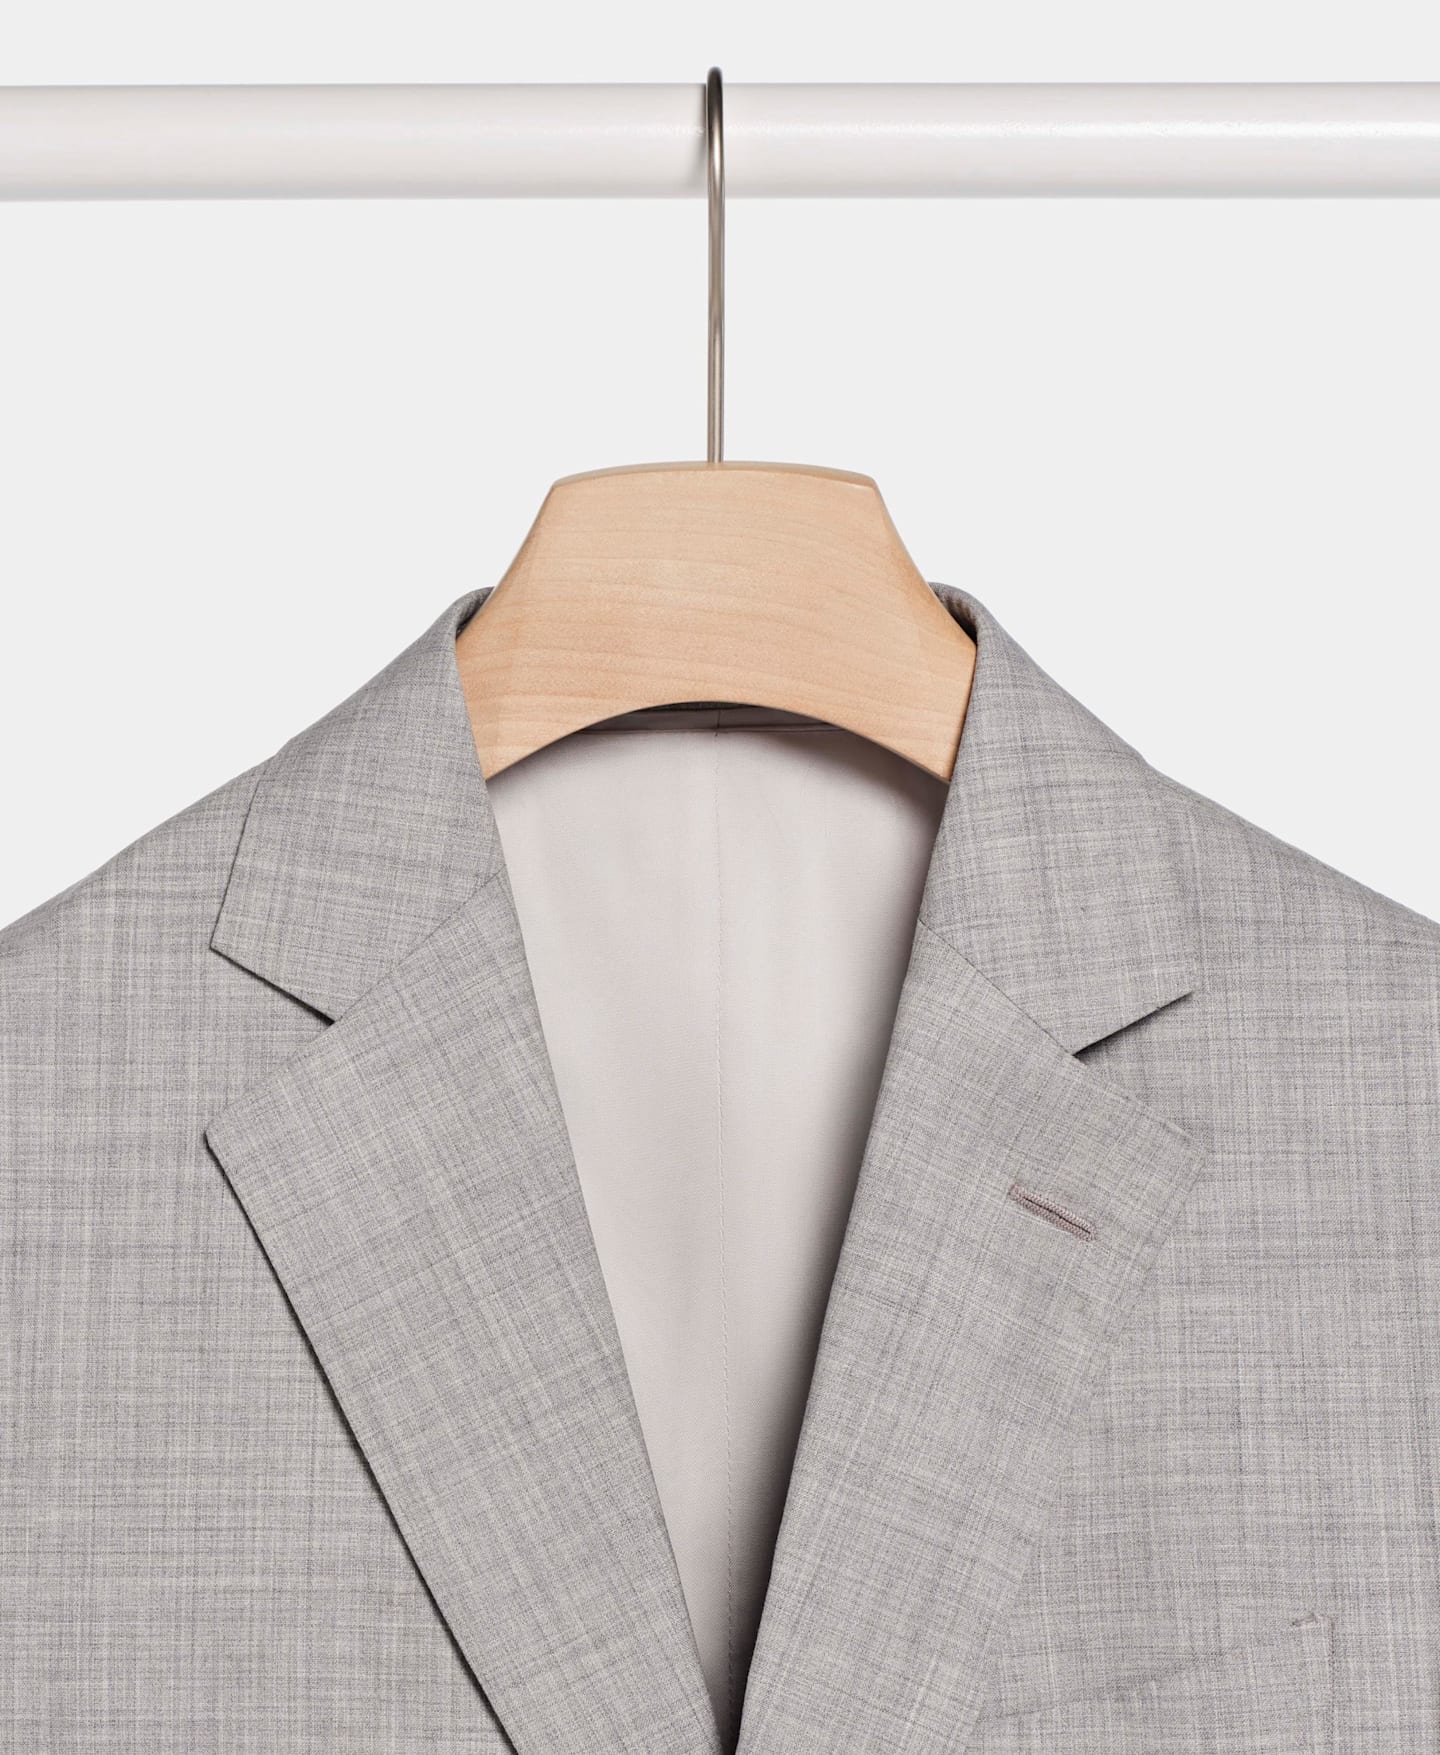 Dettaglio di una giacca da abito grigio chiaro appesa su un appendiabito in legno